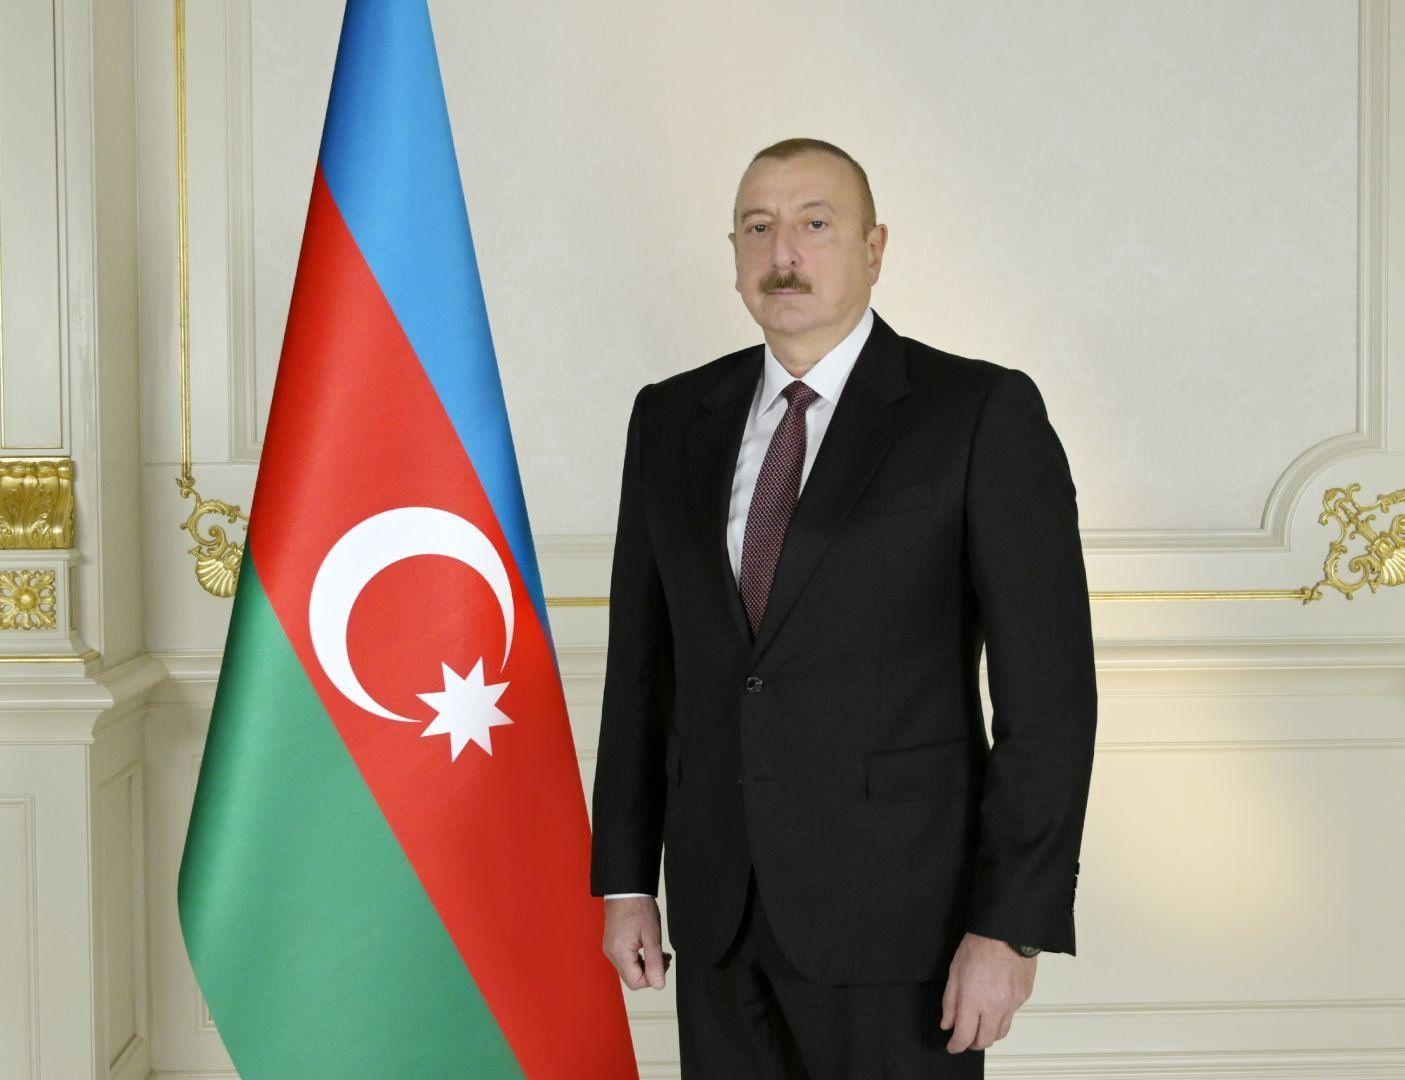 Ozarbayjondagi prezidentlik saylovlarida Ilhom Aliyev 92,05 % ovoz bilan g‘alaba qozondi